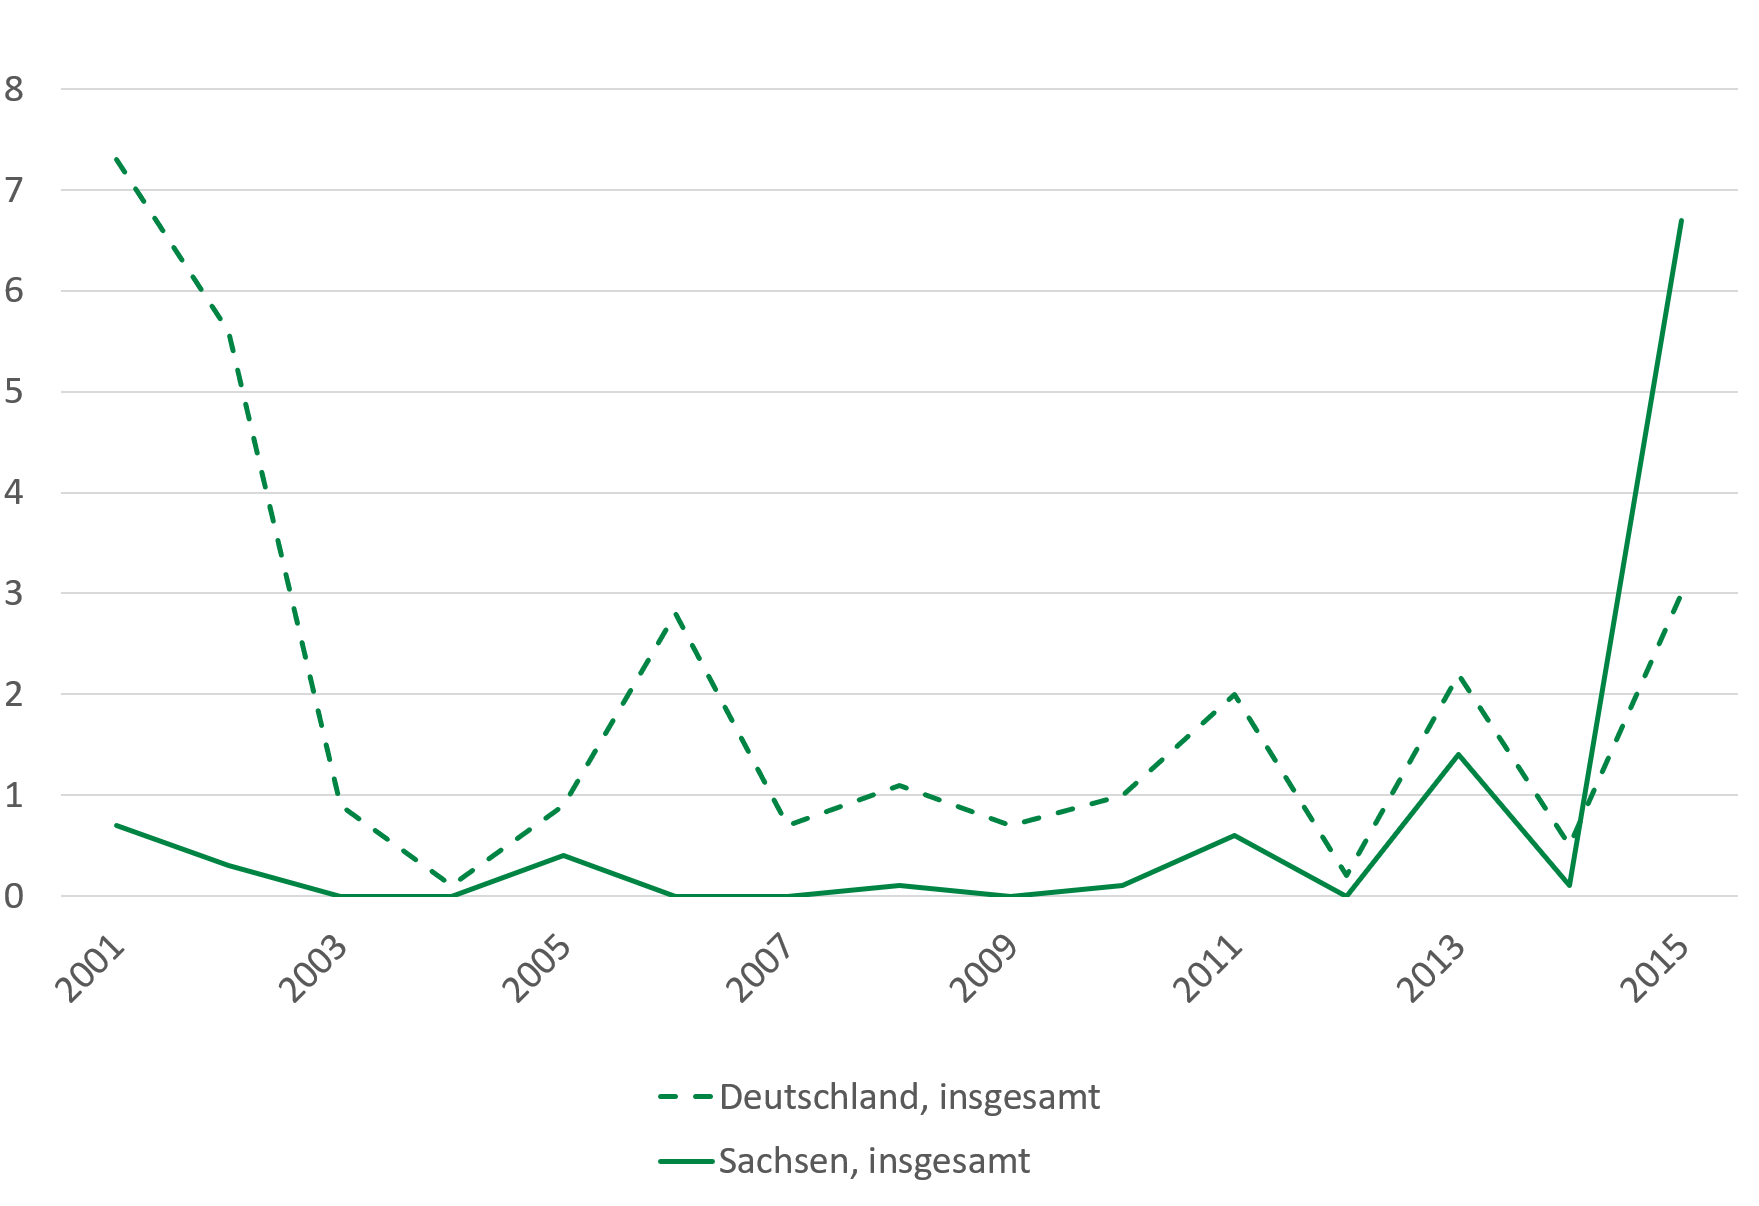 Maserninfektionen sind 2014 stark angestiegen auf 7 Fälle je 100.000 Einwohner. Von 2001 bis 2013 gab es höchstens einen Fall je 100.000 Einwohner.